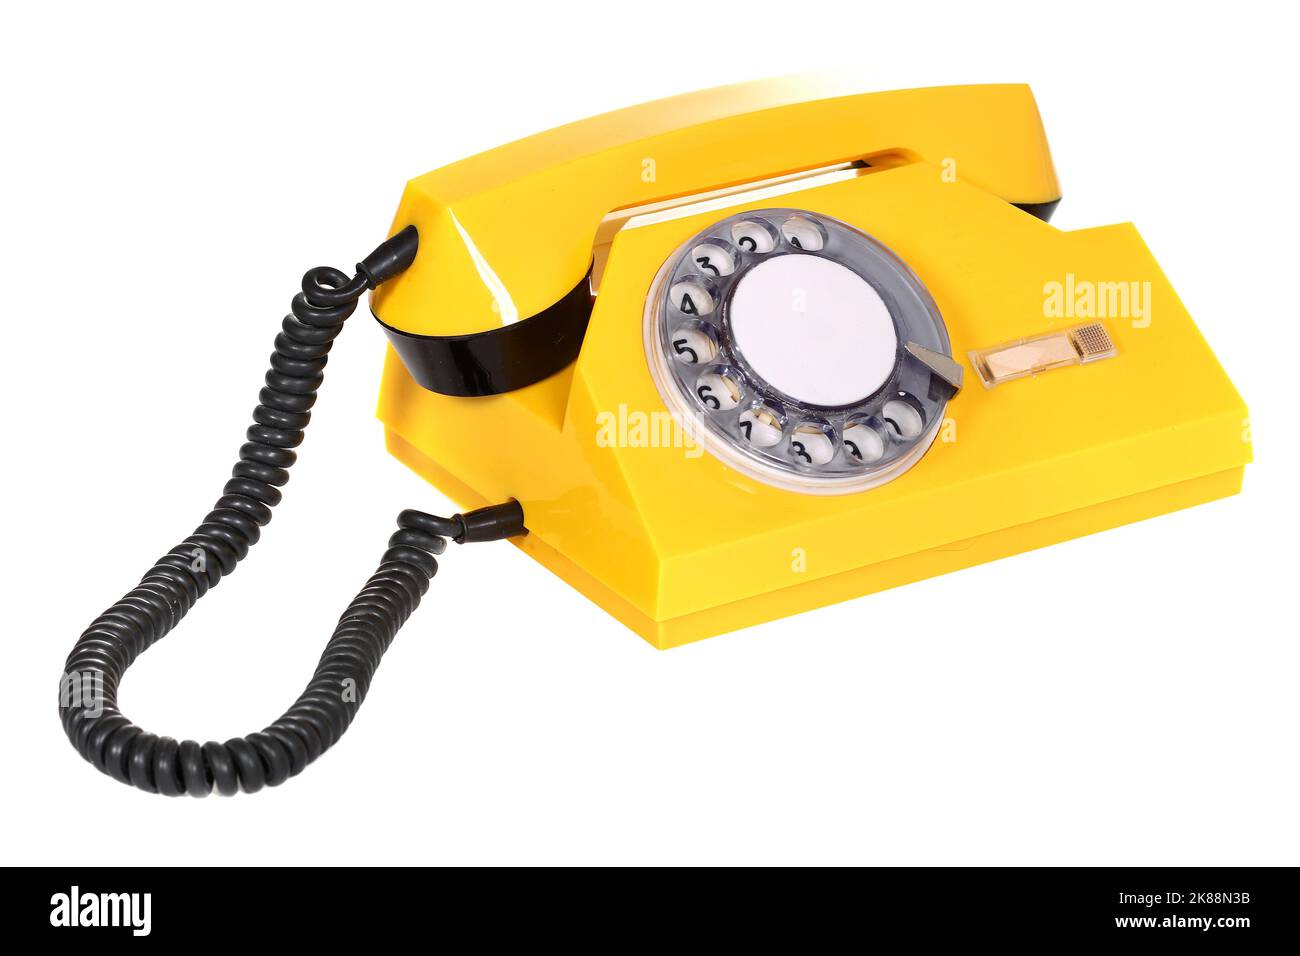 Telefono con teleselezione rotante giallo isolato su sfondo bianco Foto Stock